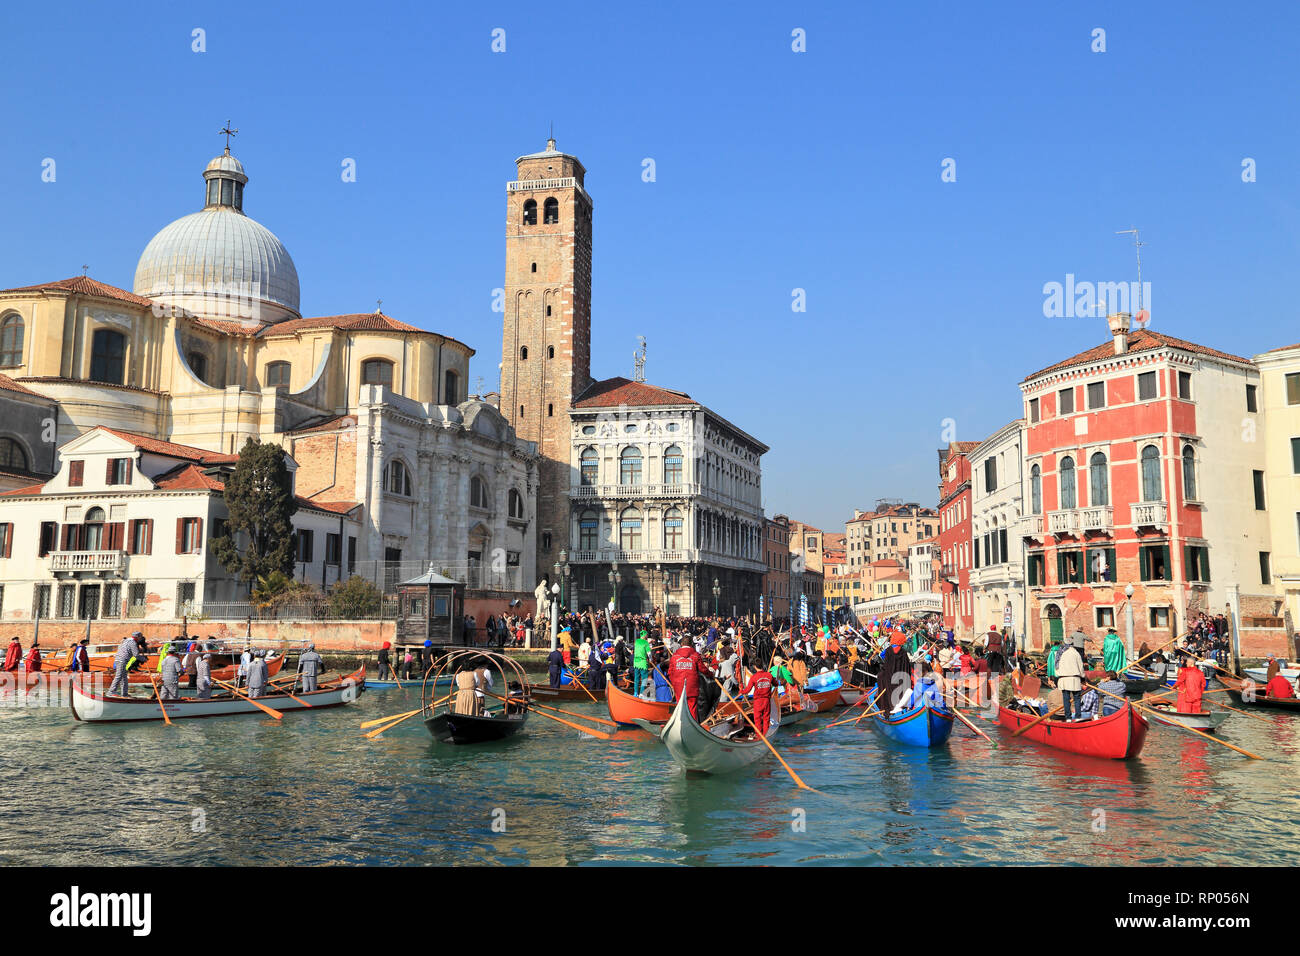 Venice carnival regatta Stock Photo